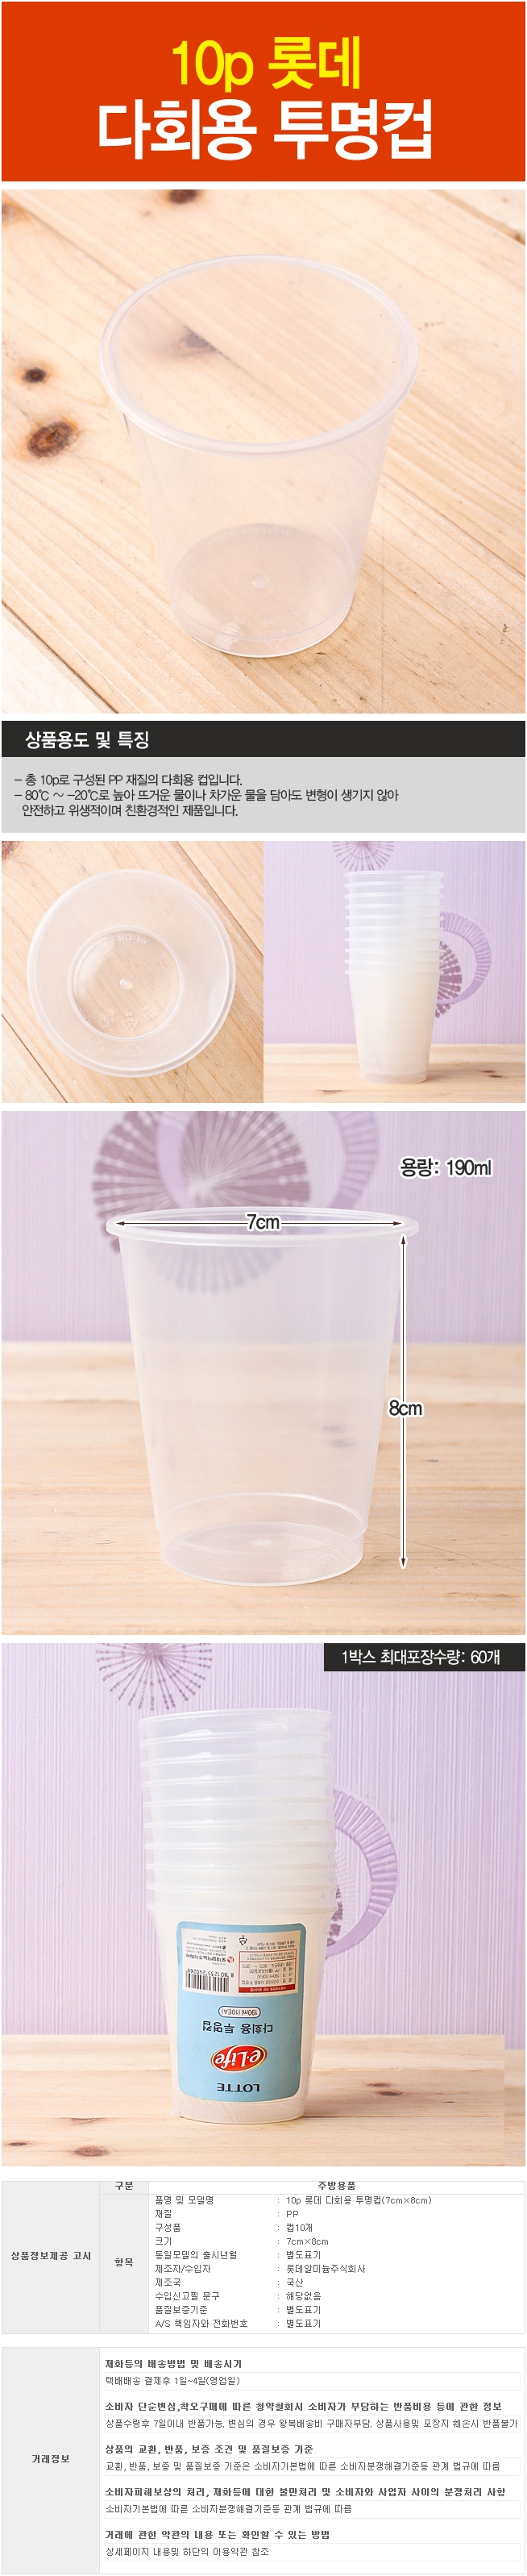 롯데 이라이프 다회용 투명 물컵 190ml 10p / 양치컵